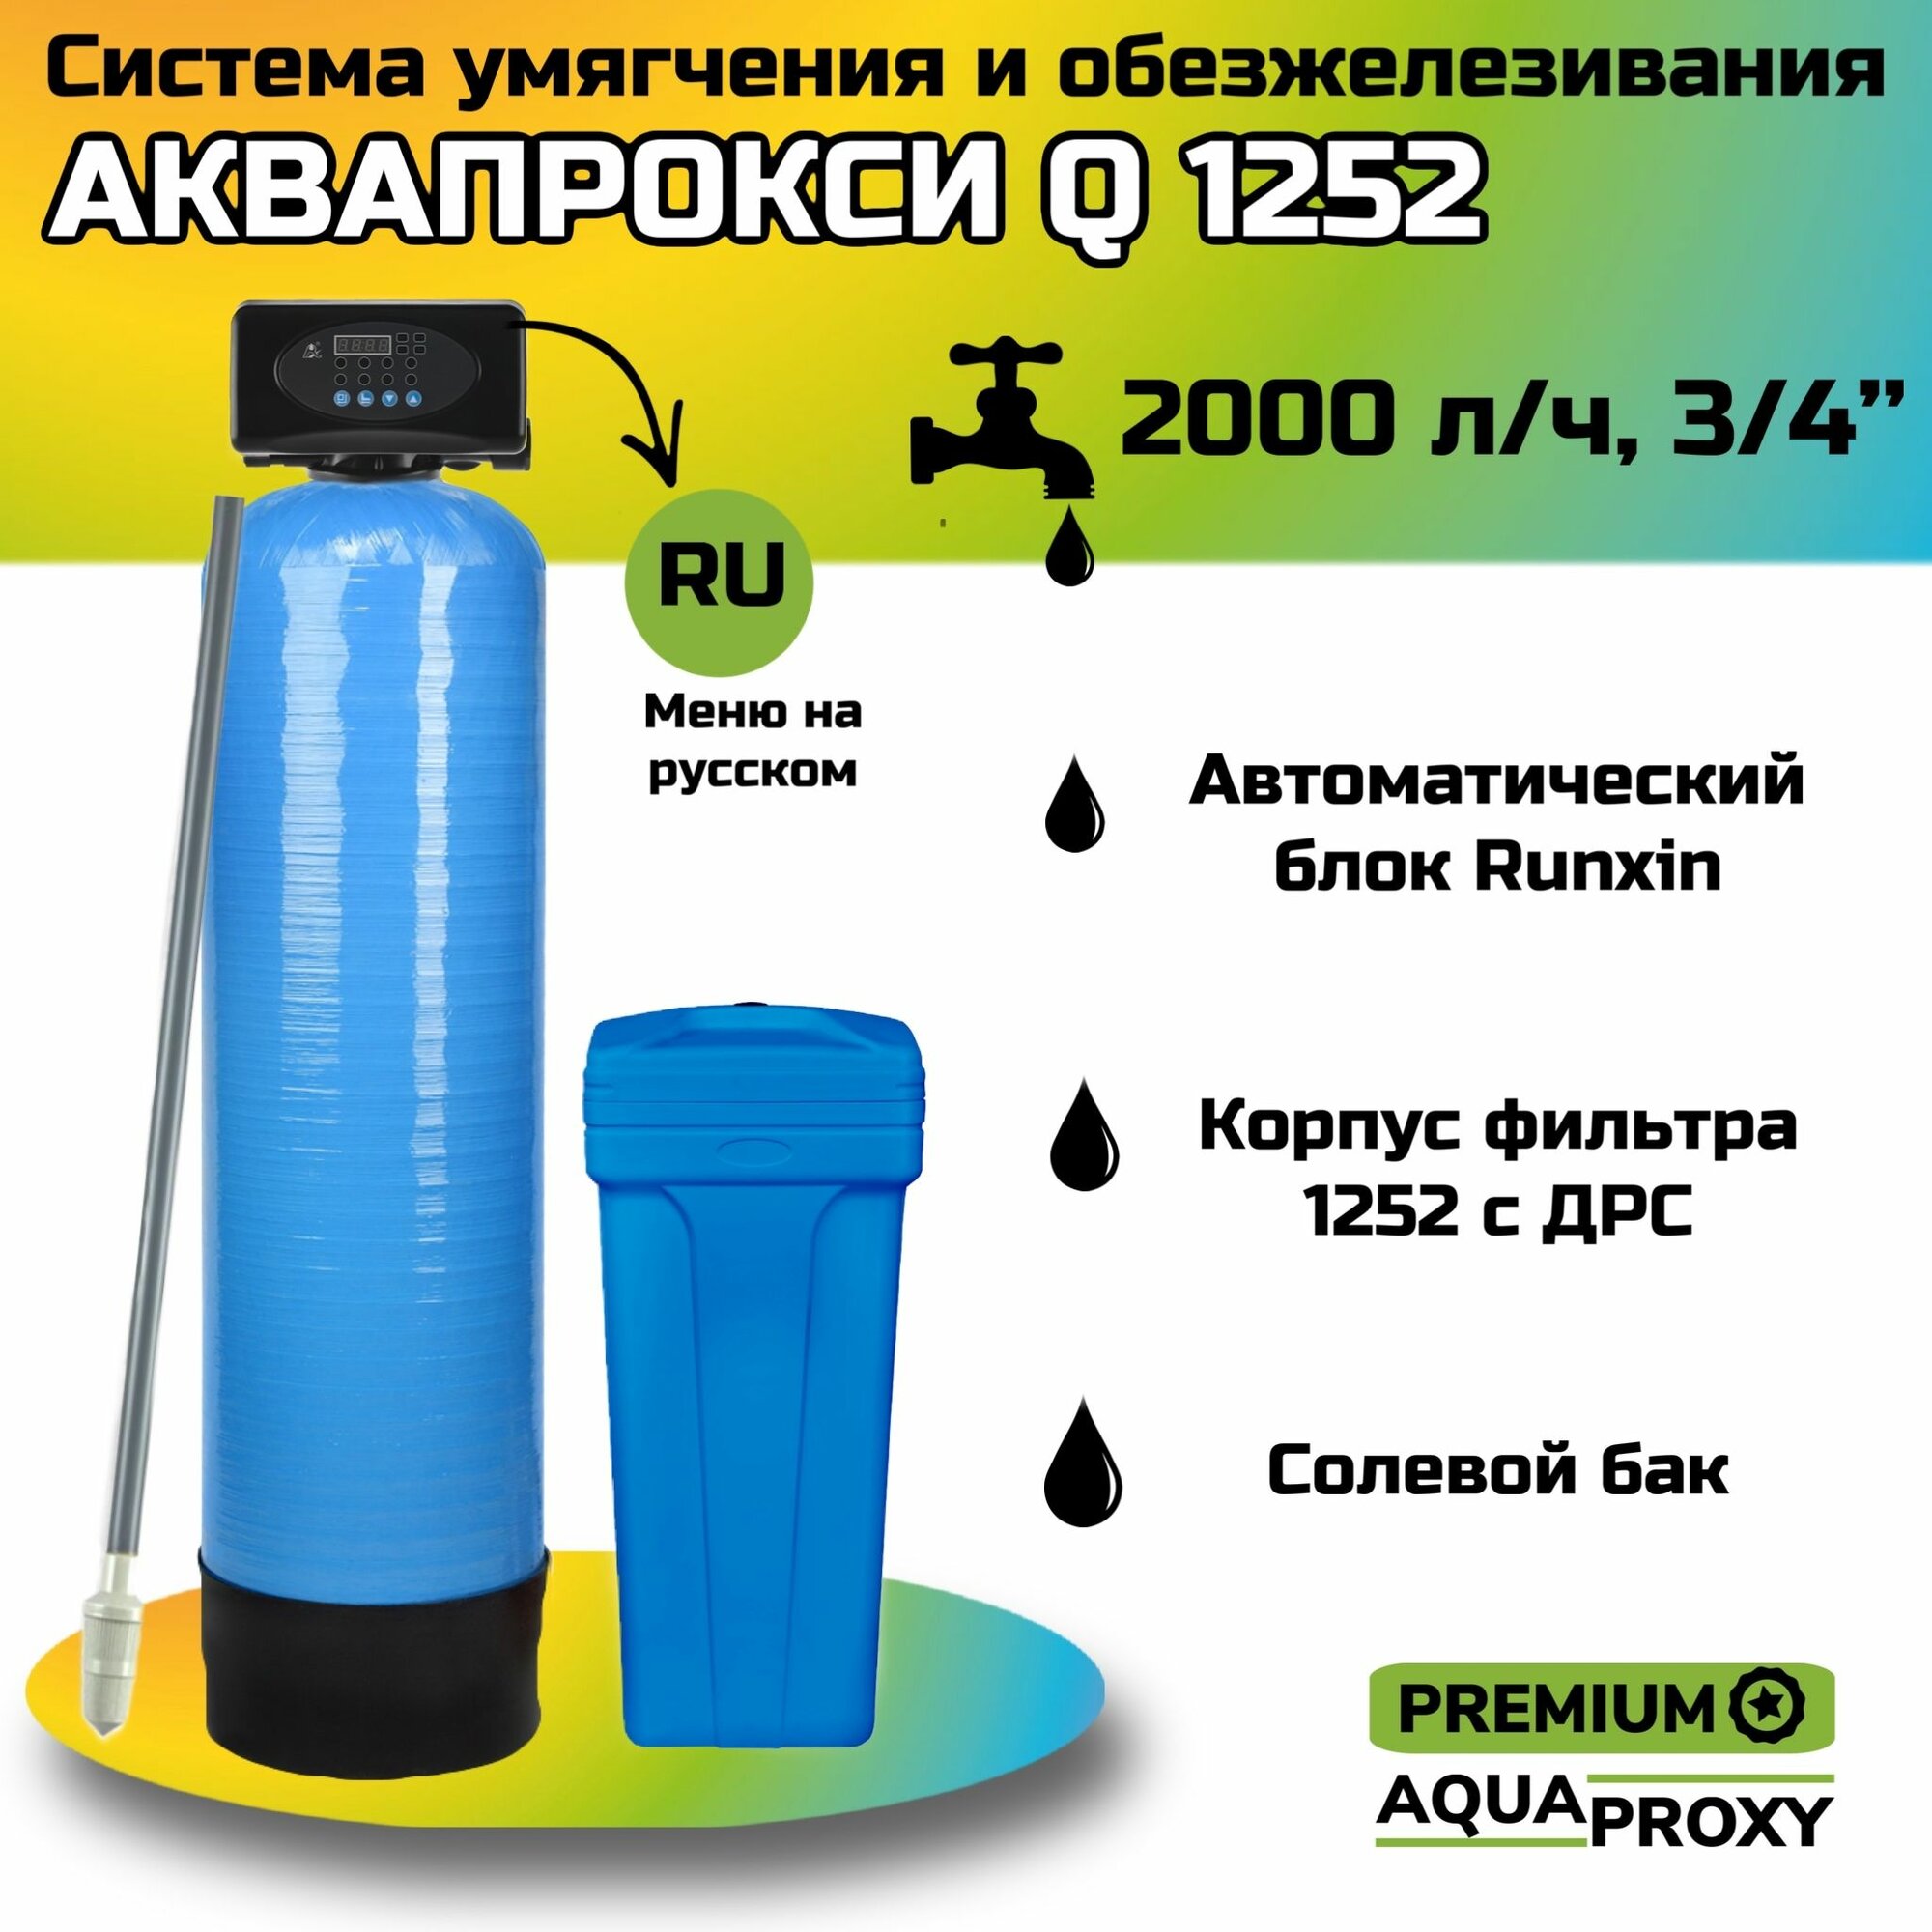 Автоматический фильтр умягчения обезжелезивания воды AquaProxy 1252 Q система очистки воды из скважины для дачи и дома и предприятий. 2000 л/ч